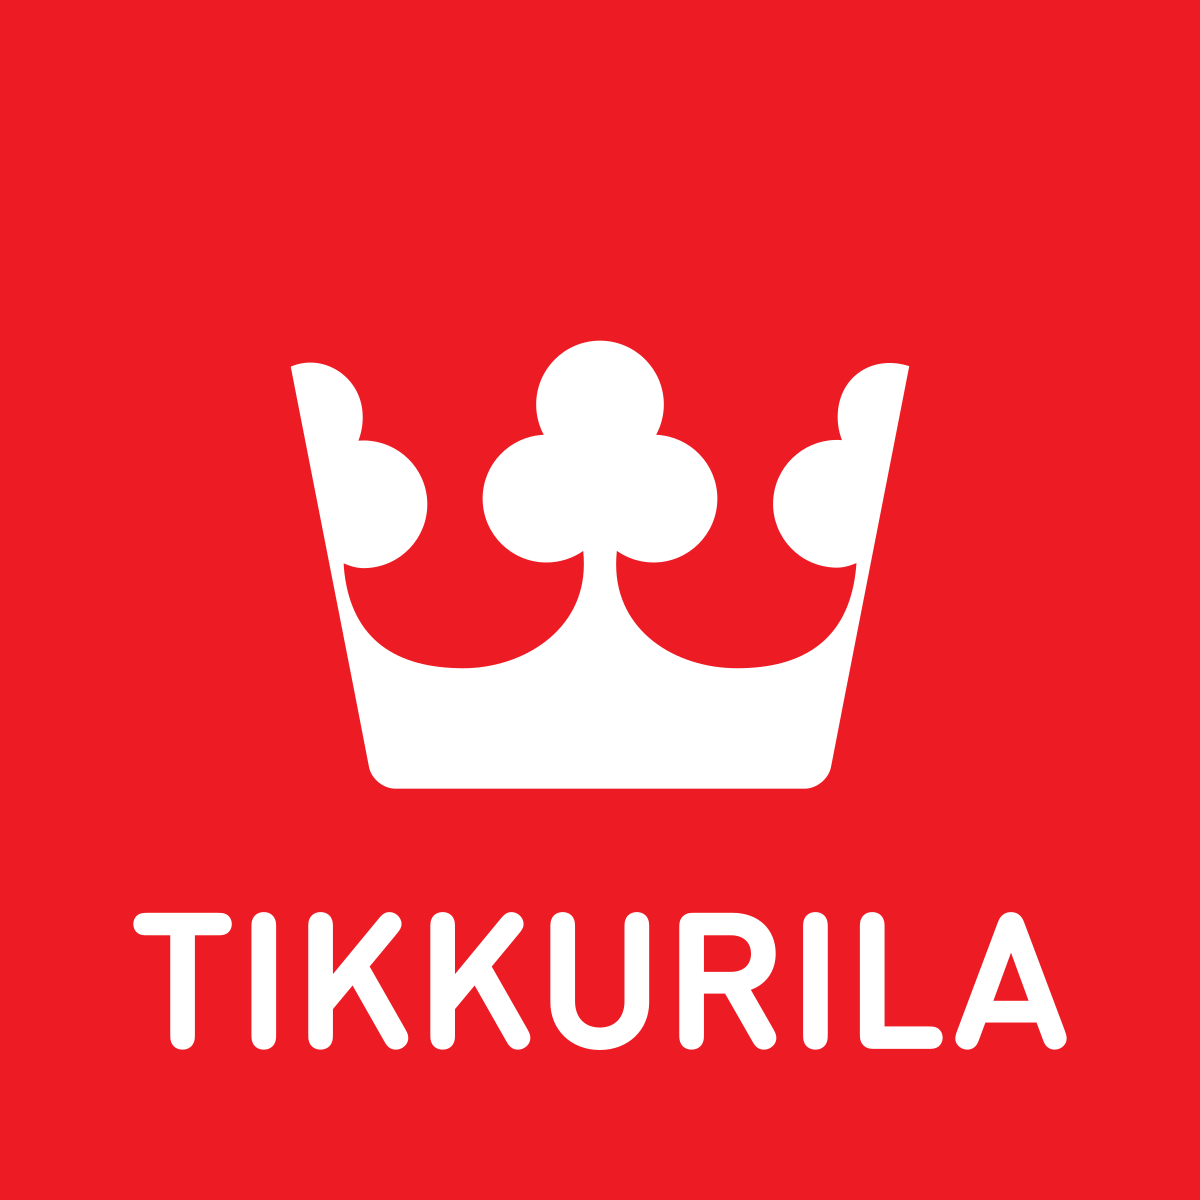 Tikkurila - finský výrobce barev, laků, olejů a lazur na dřevo, kov, stěny a další materiály.